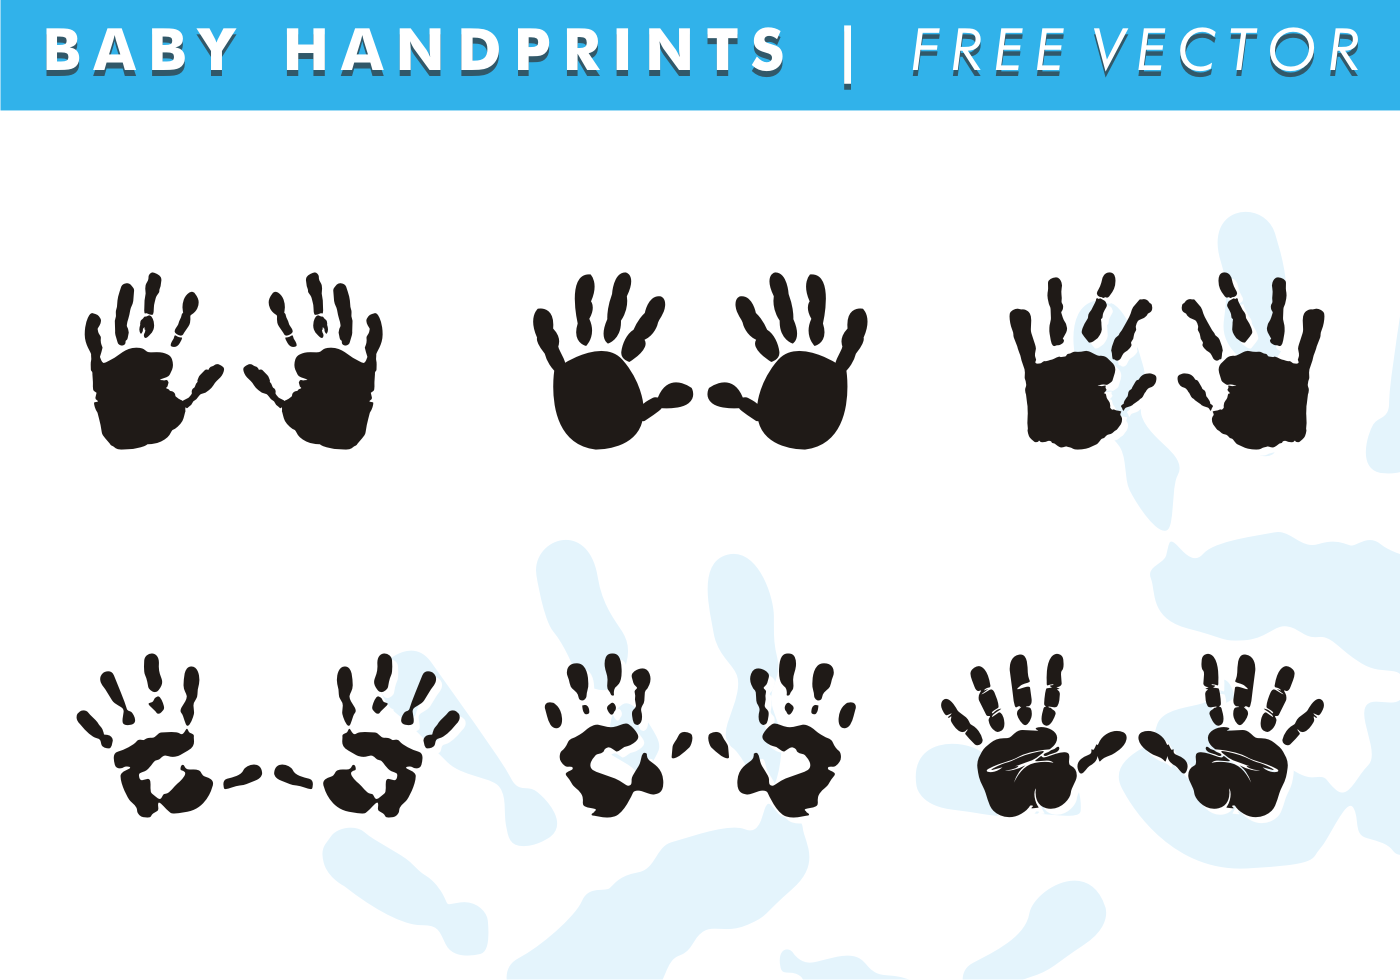 Download Baby Handprints Free Vector - Download Free Vector Art ...